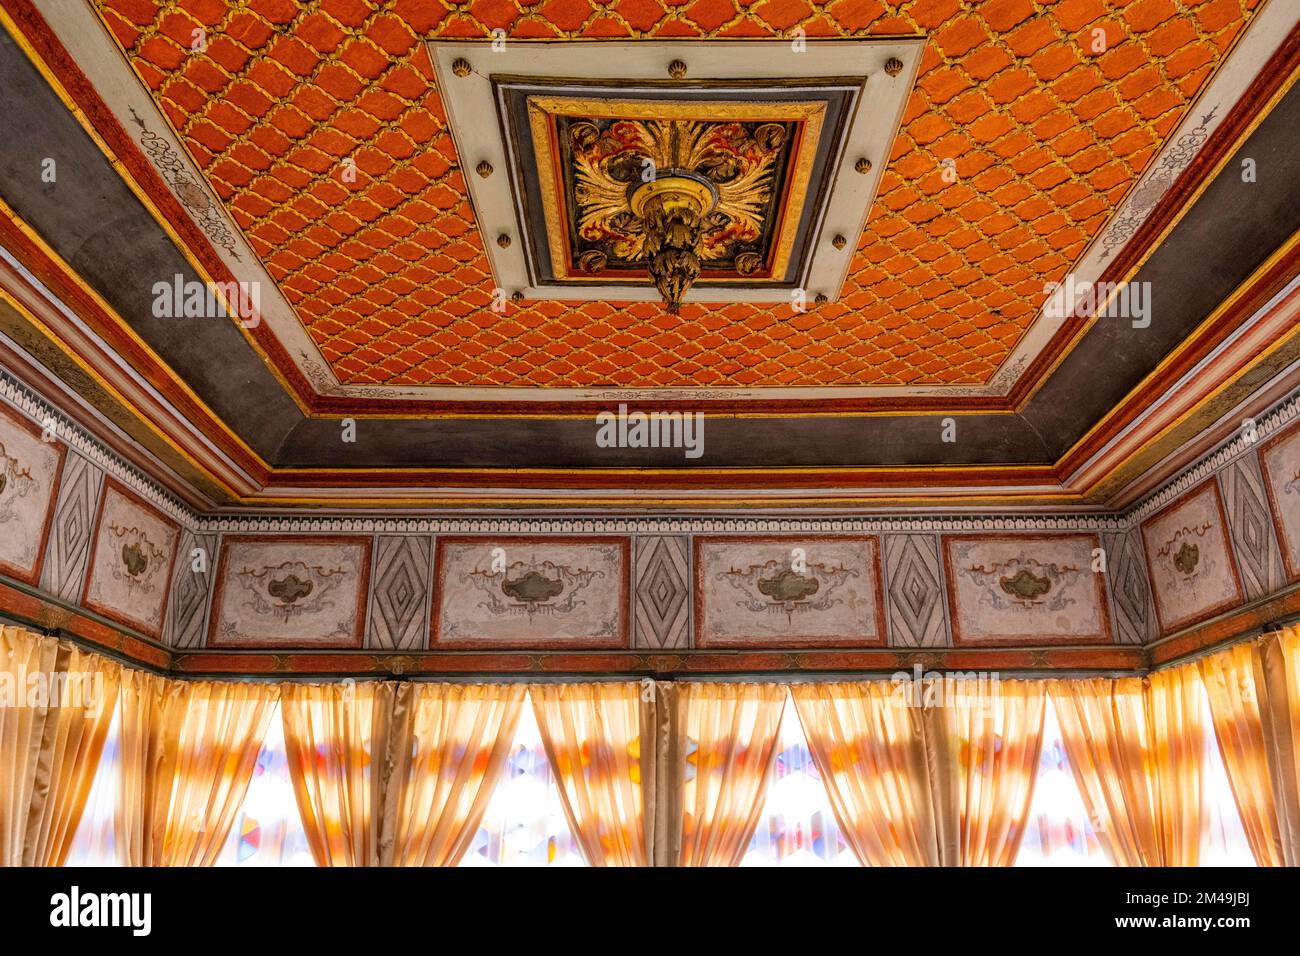 Magnifique intérieur du palais de Khan, Bakhchysarai, Crimée, Russie Banque D'Images